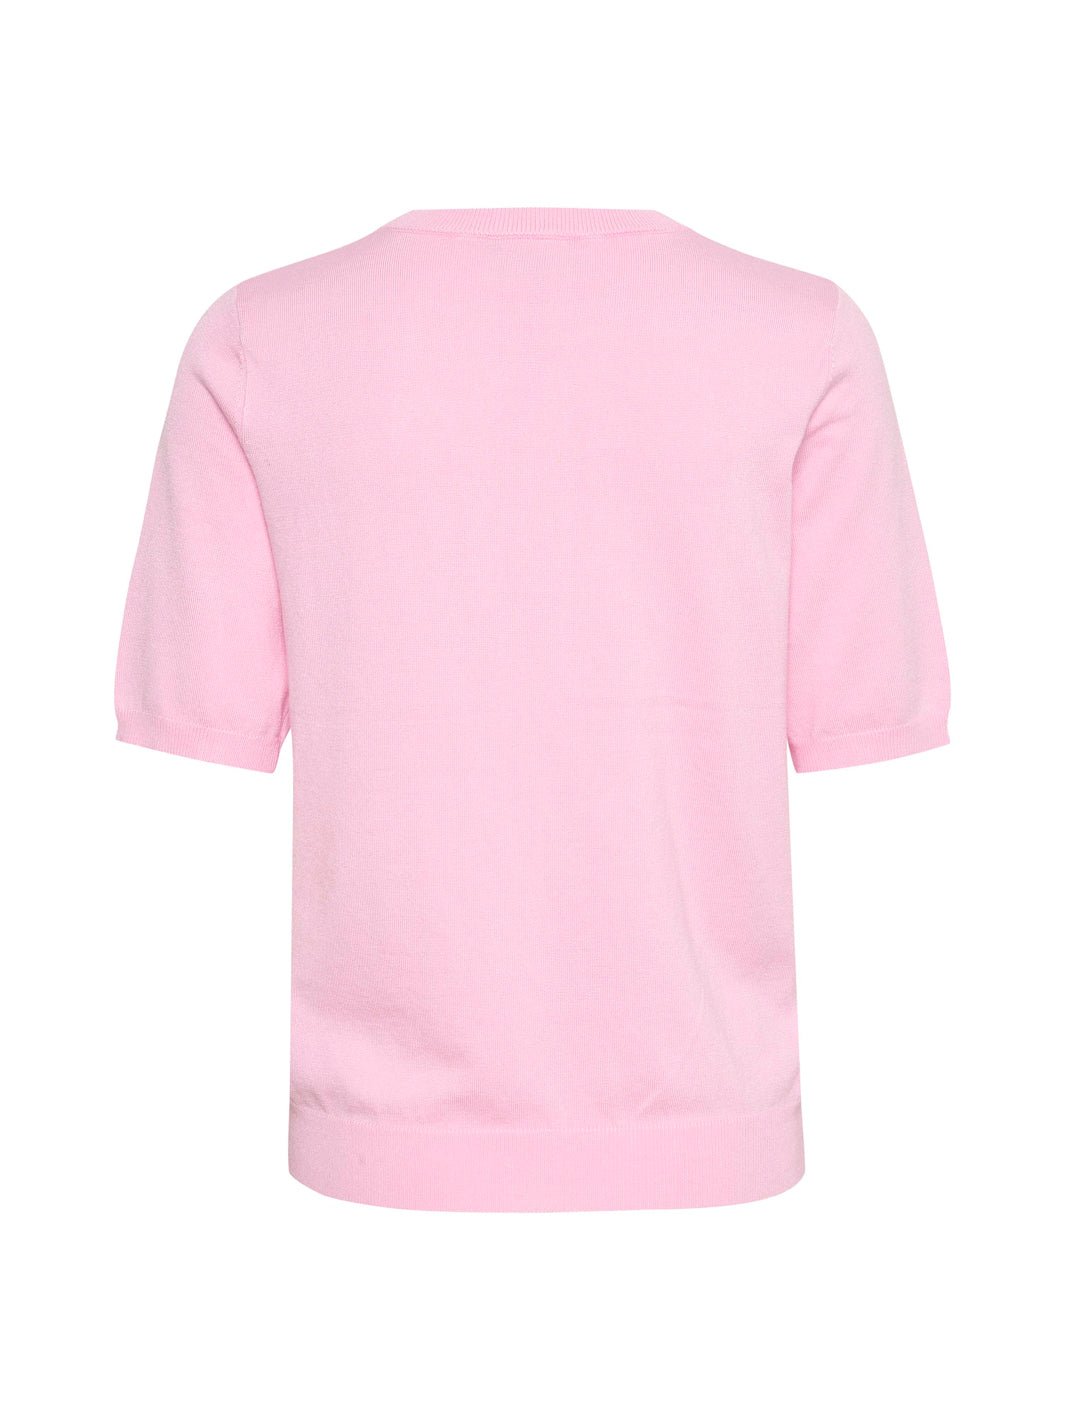 Kaffe KAlizza o-neck pullover pink mist - Online-Mode